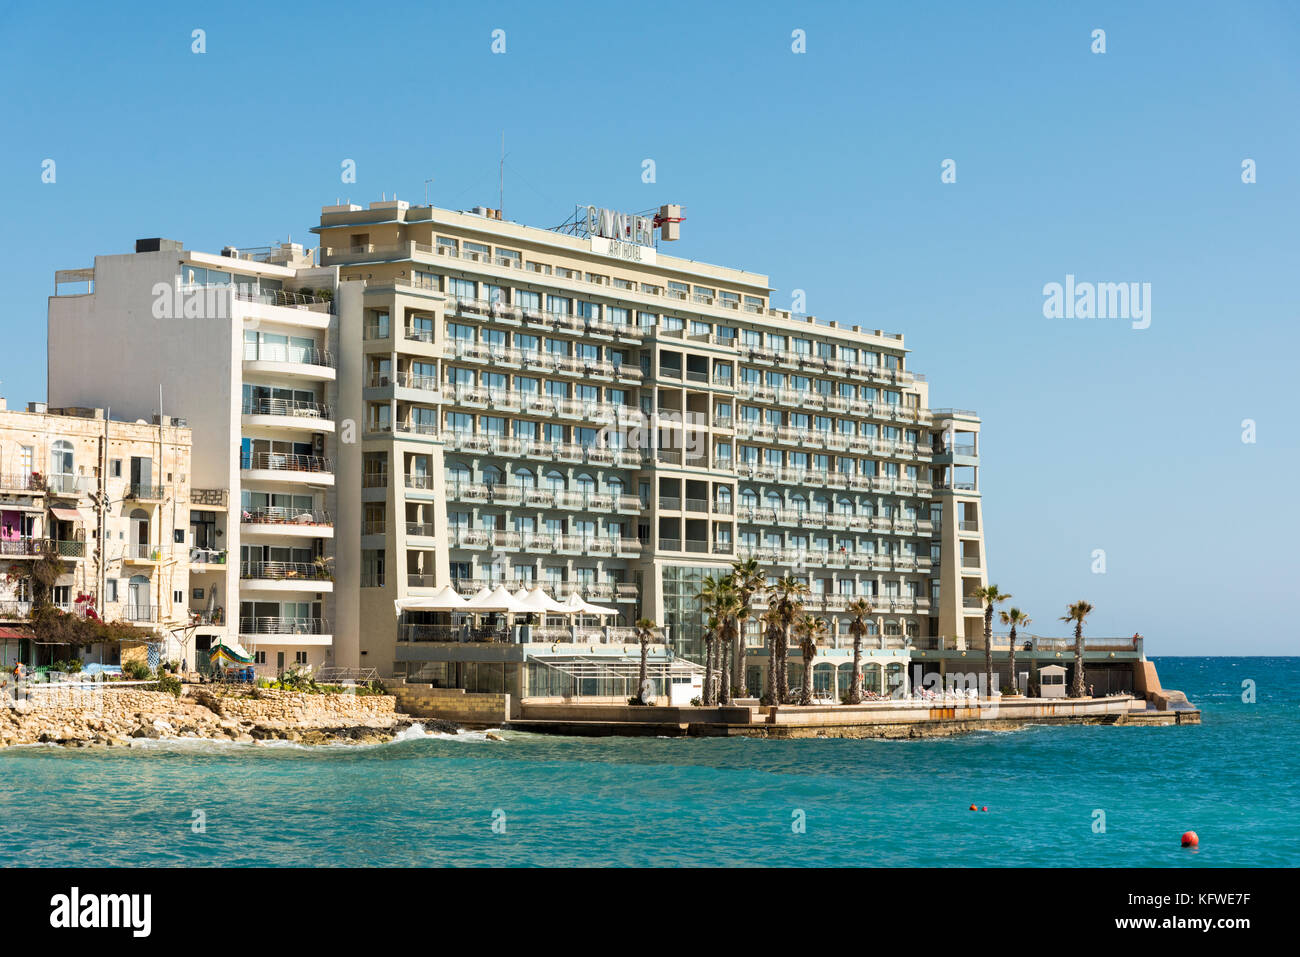 The Cavalieri Art Hotel at St Julians Bay Malta Stock Photo